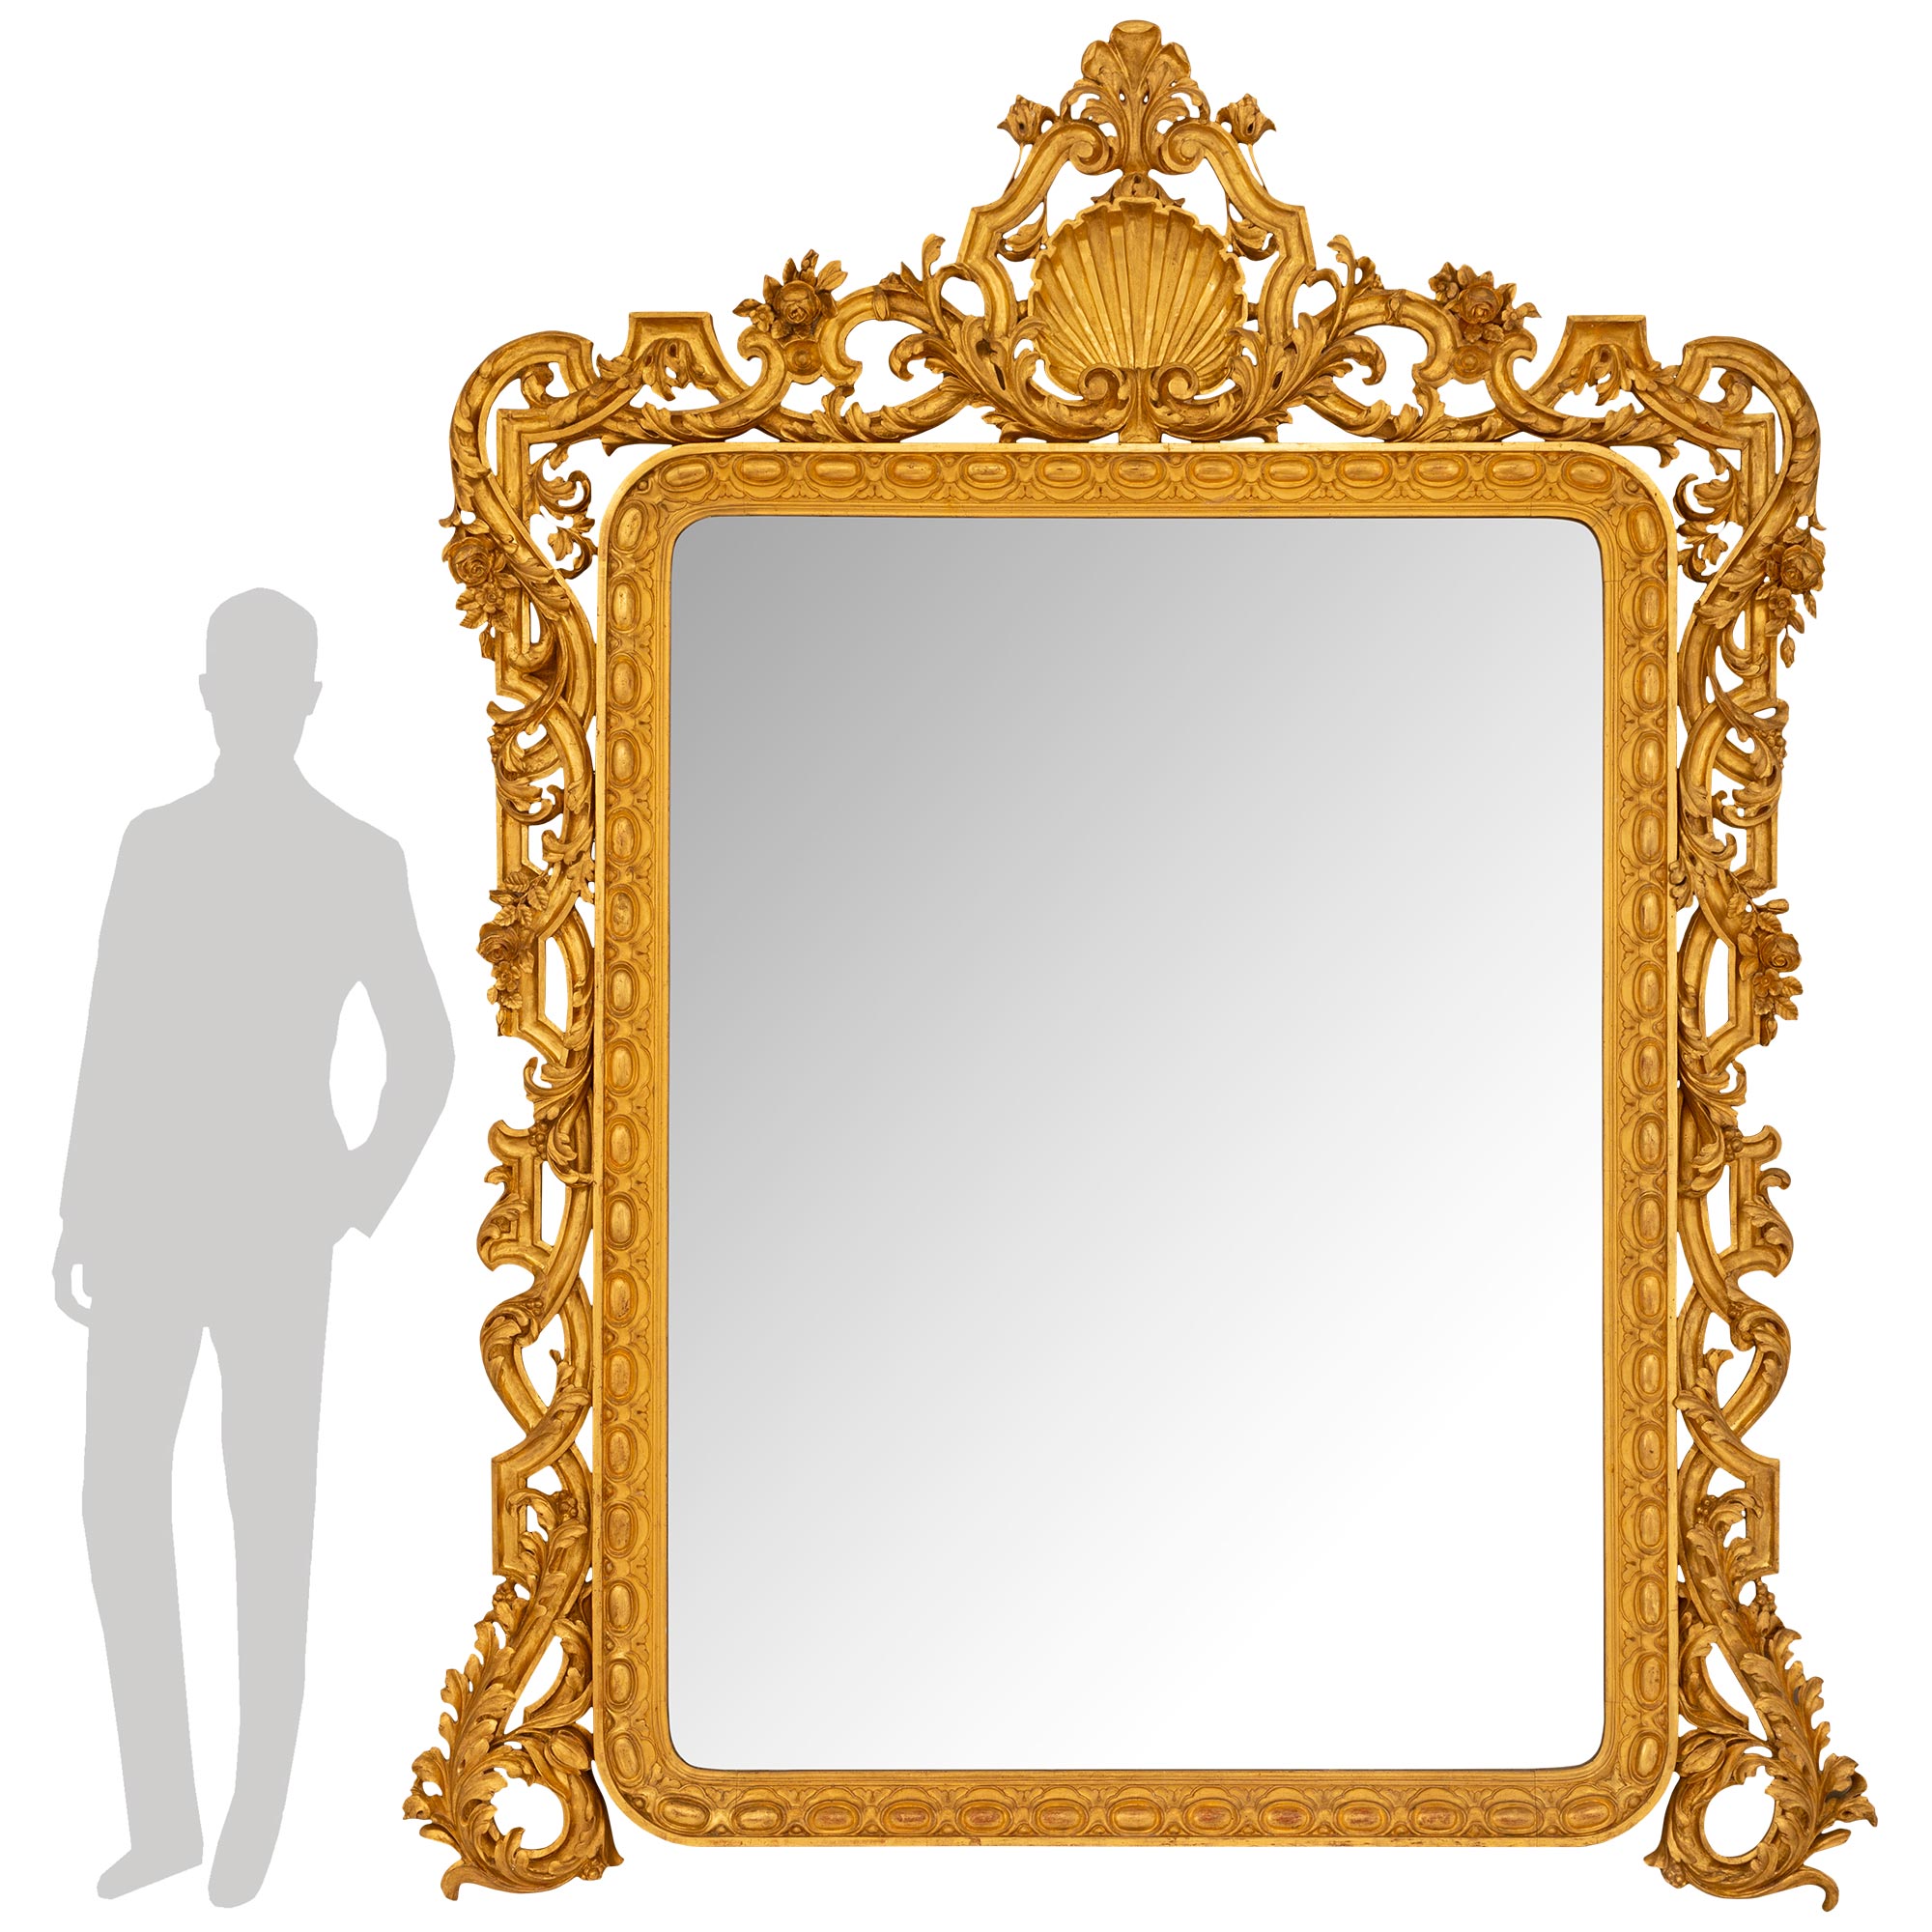 Une paire spectaculaire et monumentale de miroirs italiens en bois doré du 19ème siècle avec les plaques d'origine. Chaque superbe miroir en bois doré finement sculpté possède un cadre aux angles arrondis avec une bordure ornée de perles. La